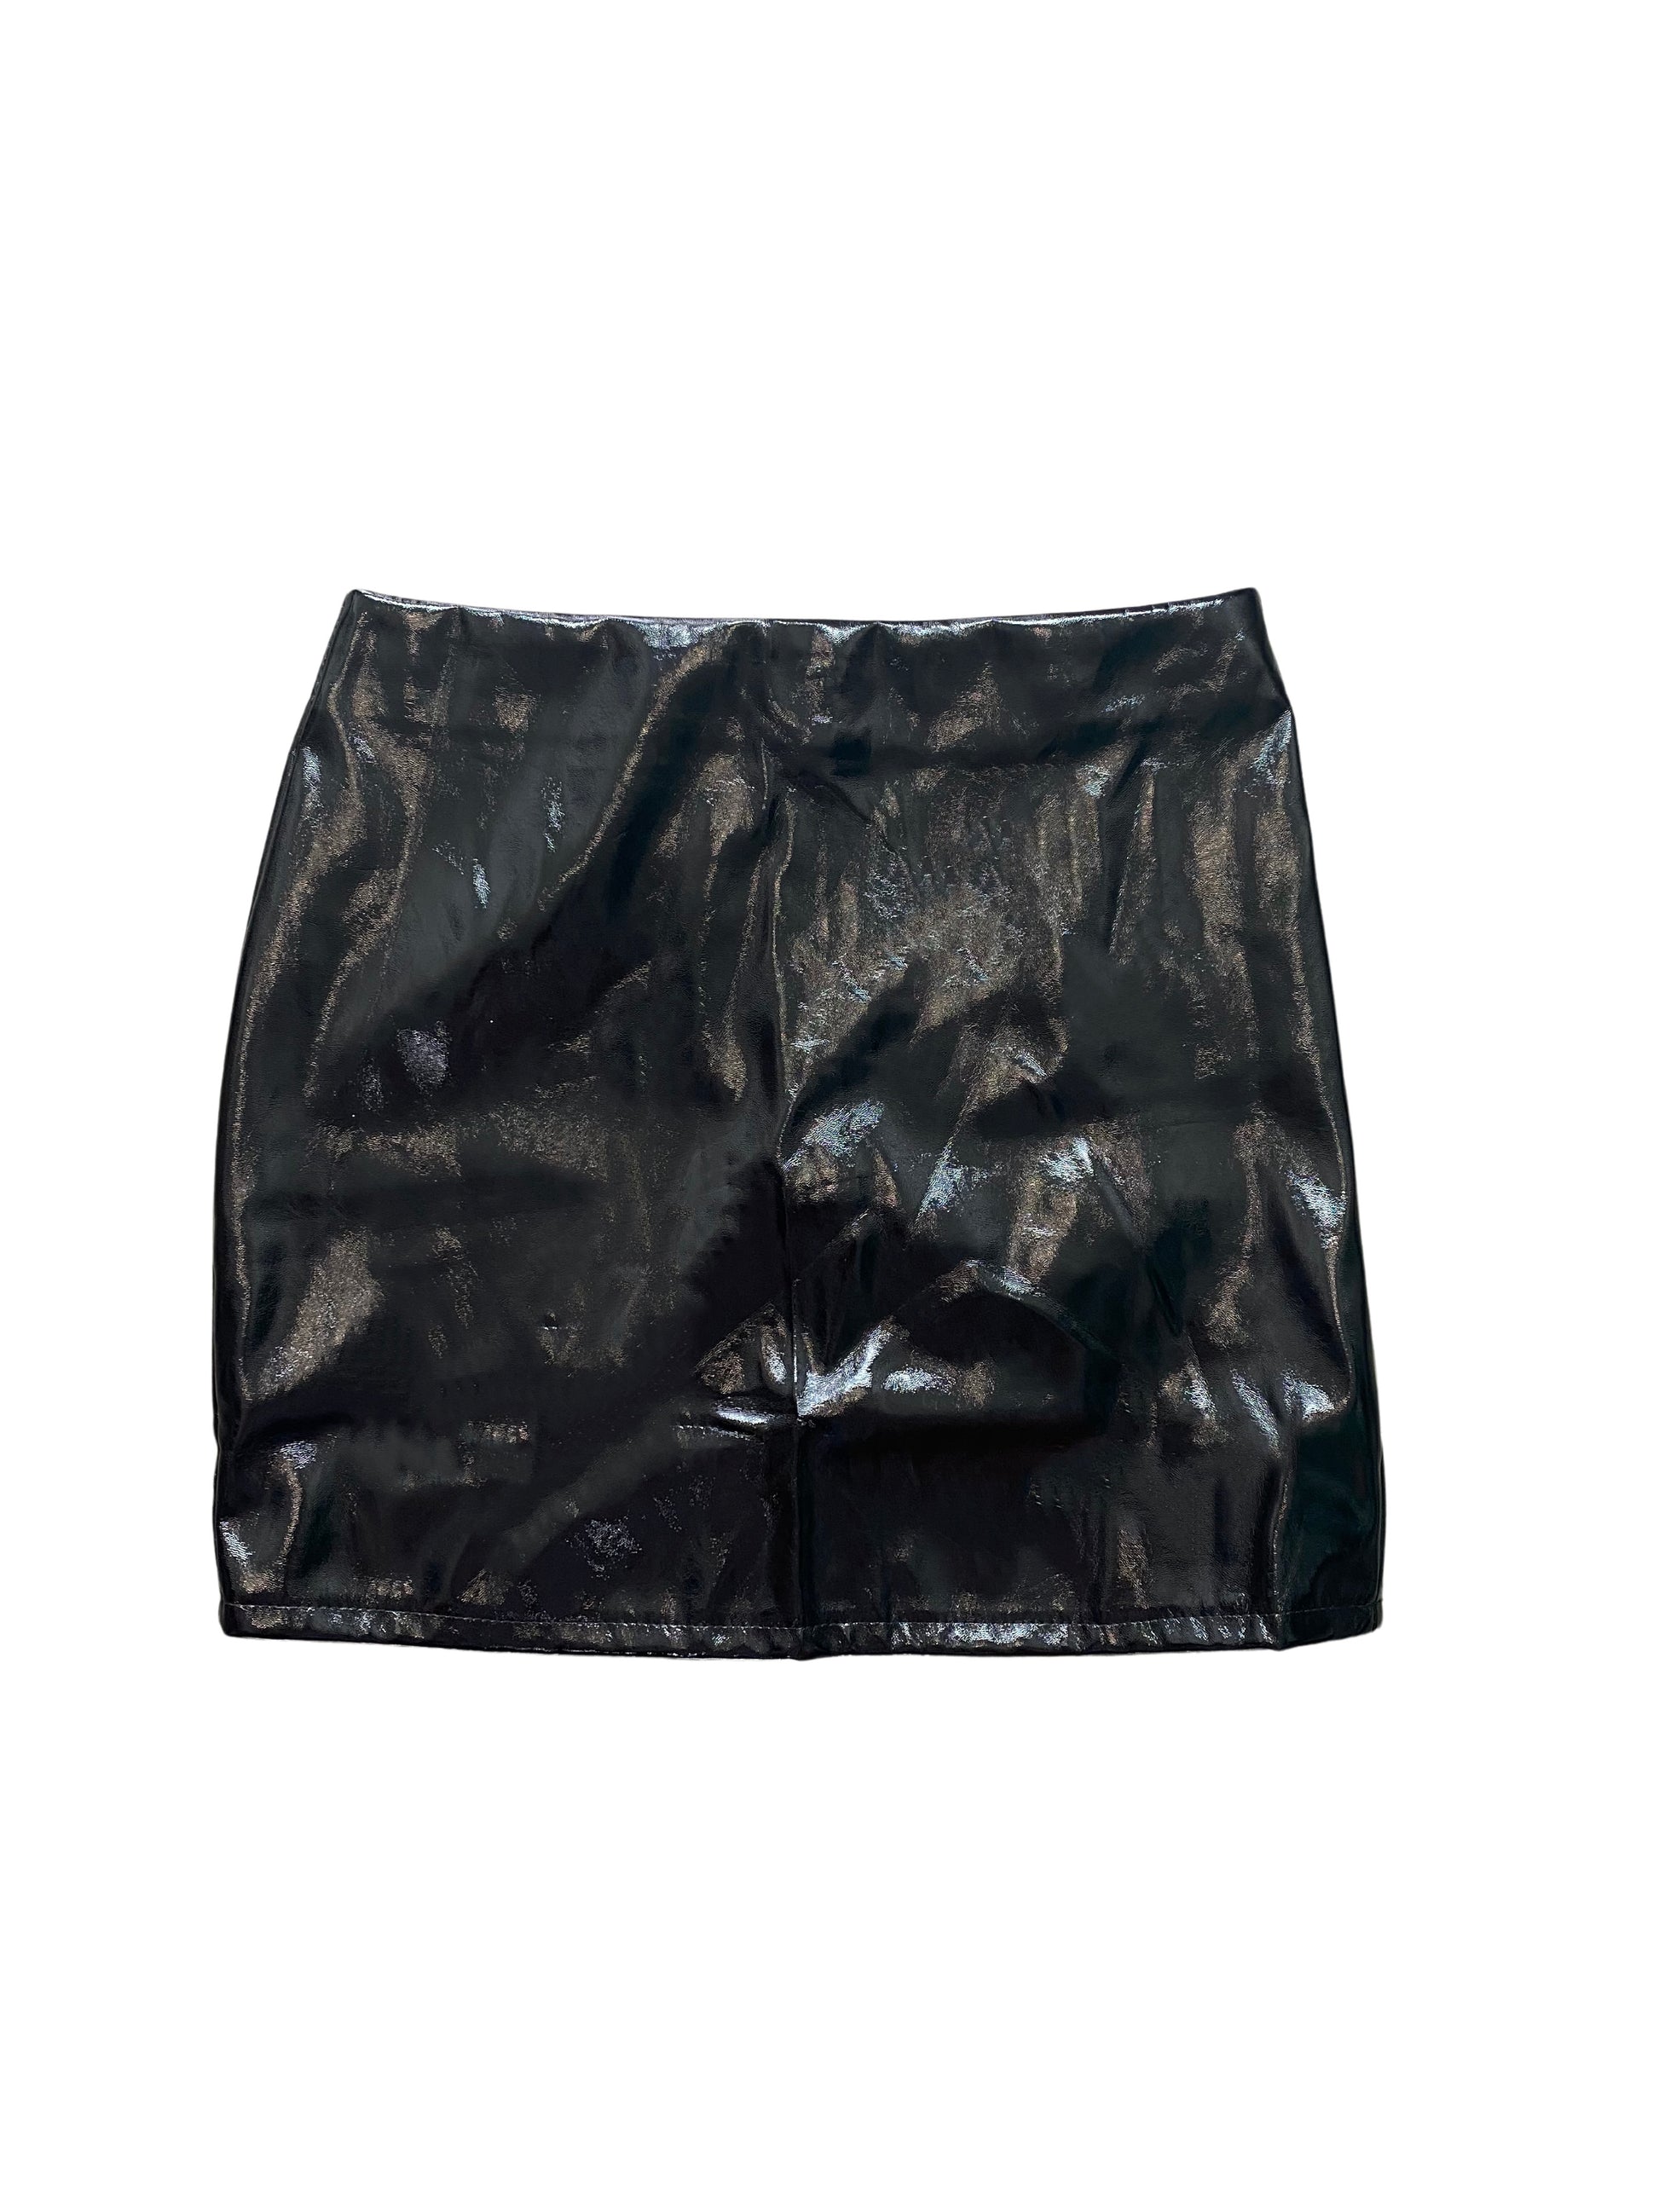 women's black patent leather mini skirt - 8586